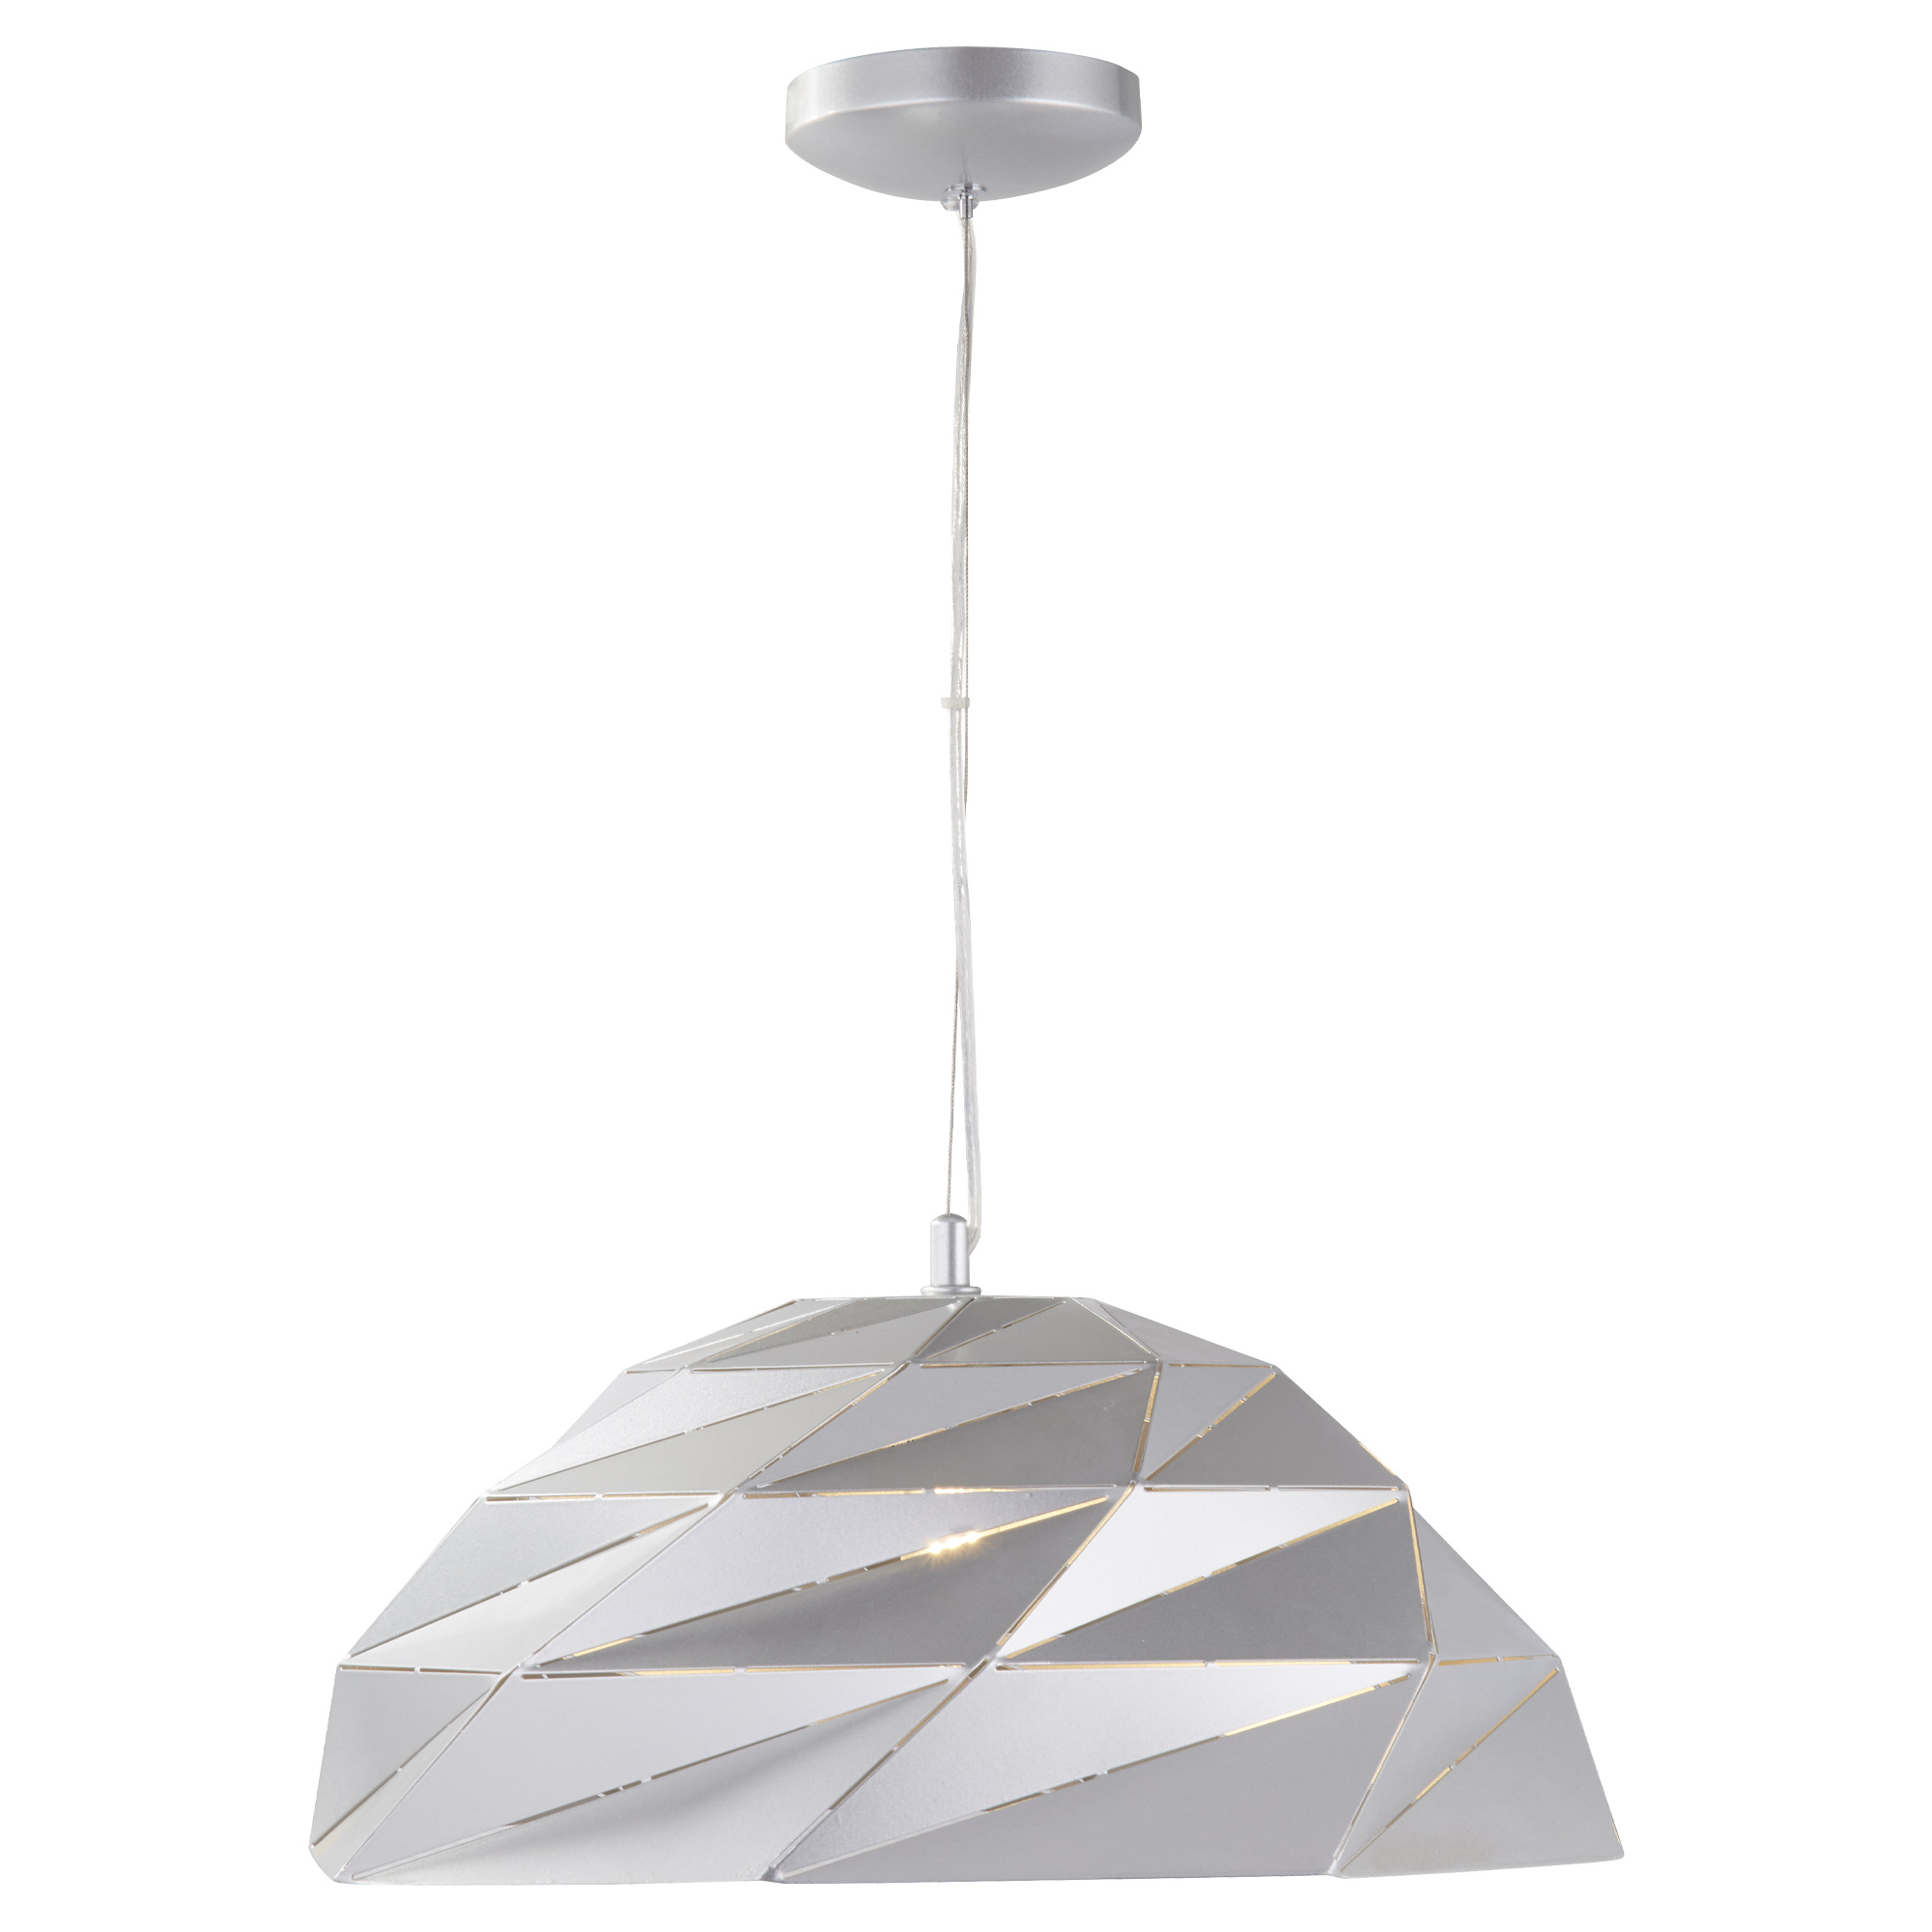 Origami Dome Pendant - Metallic Silver